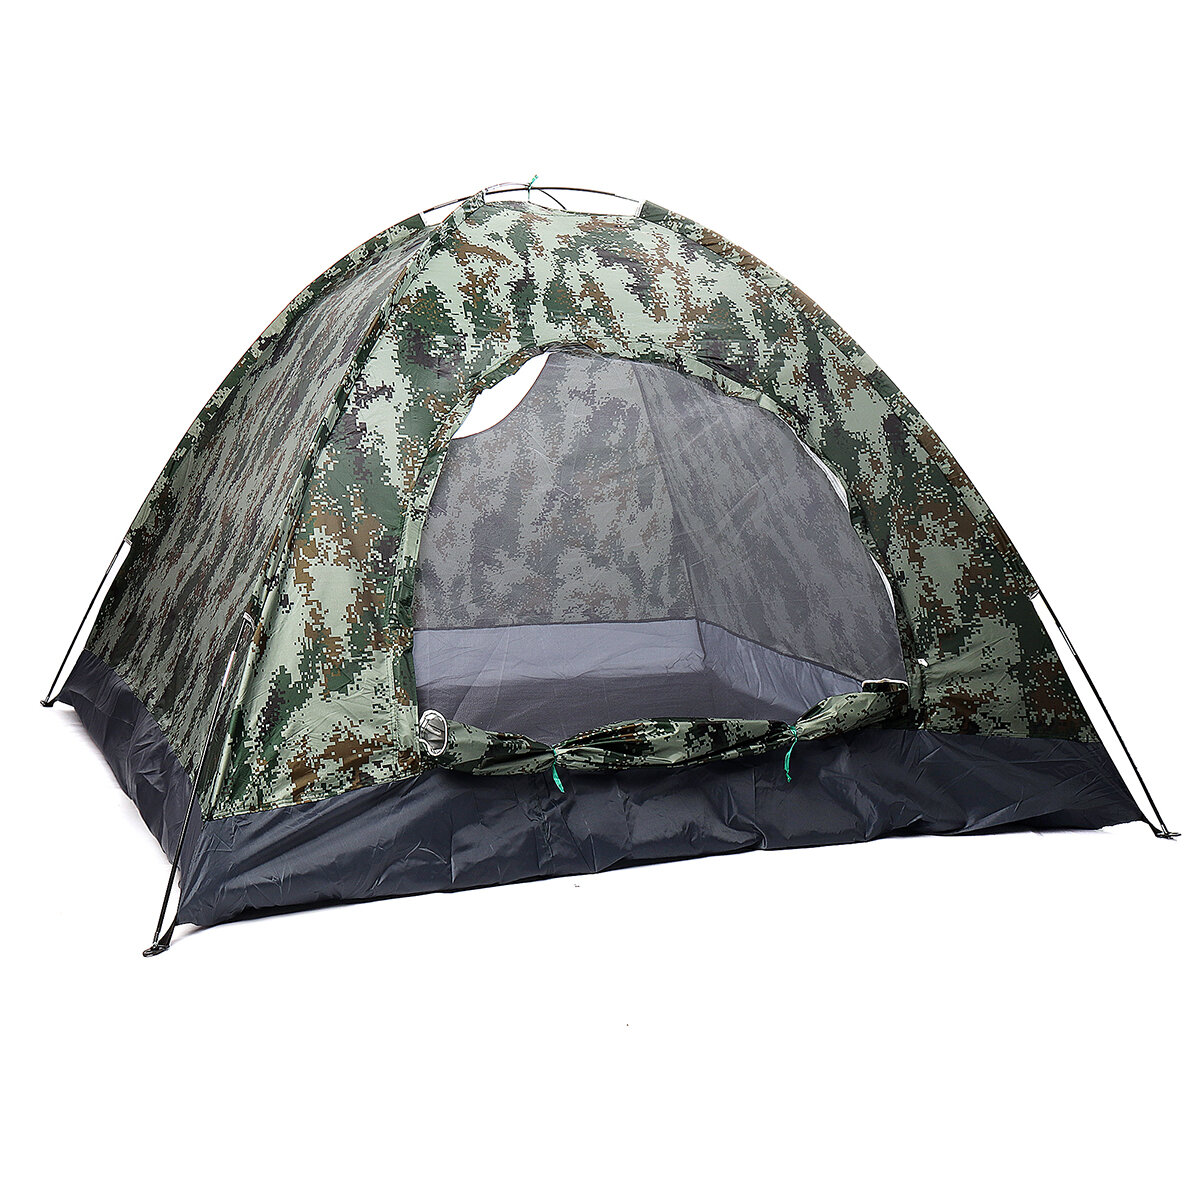 3-4人用の防水テント、丸いドア、キャンプやハイキング、屋外での寝具。